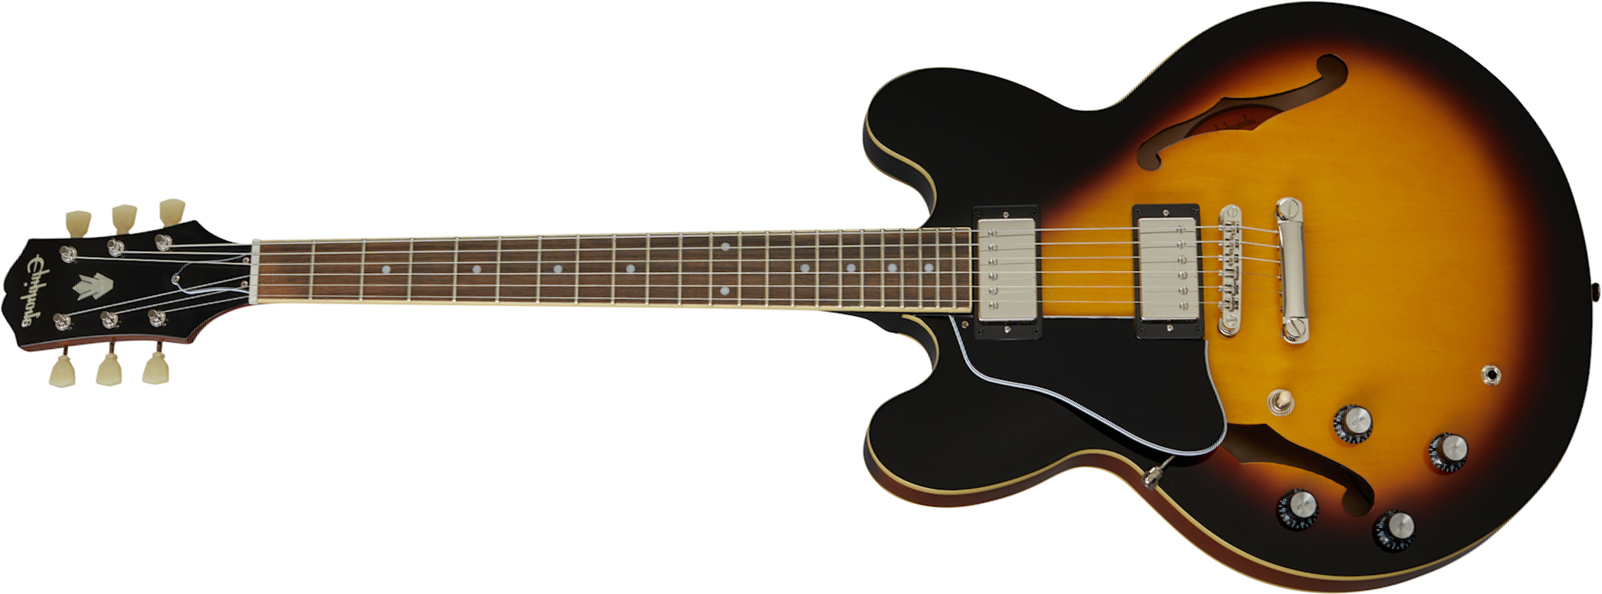 Epiphone Es-335 Lh Inspired By Gibson Original Gaucher 2h Ht Rw - Vintage Sunburst - Guitarra electrica para zurdos - Main picture